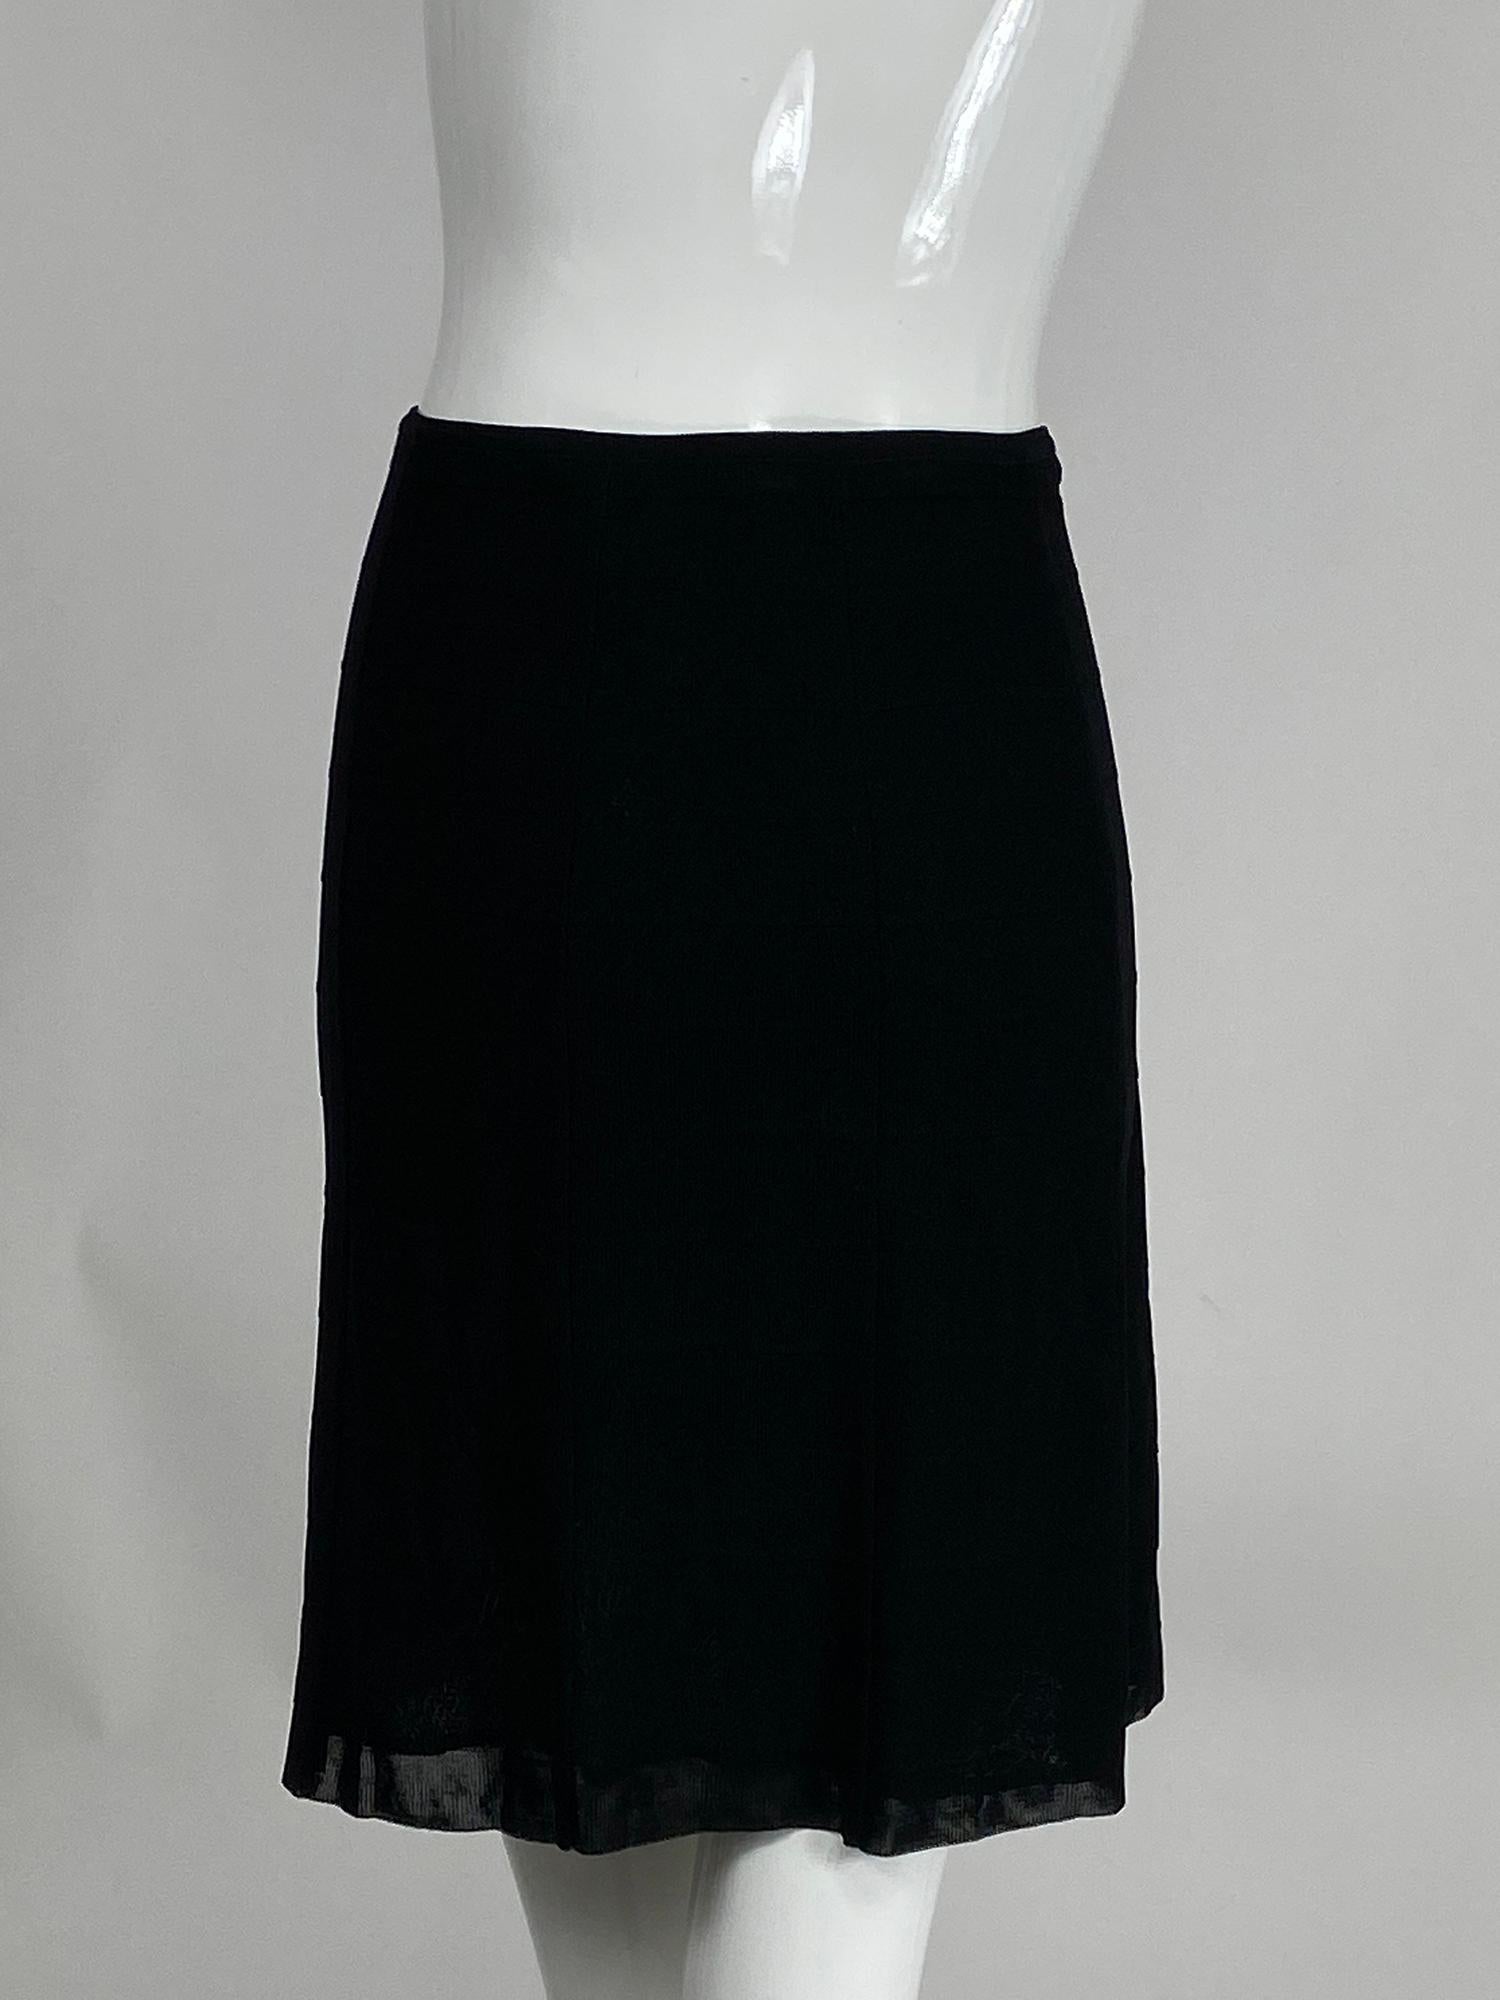 Women's Chanel 07C Black Gored Rib Knit Skirt 